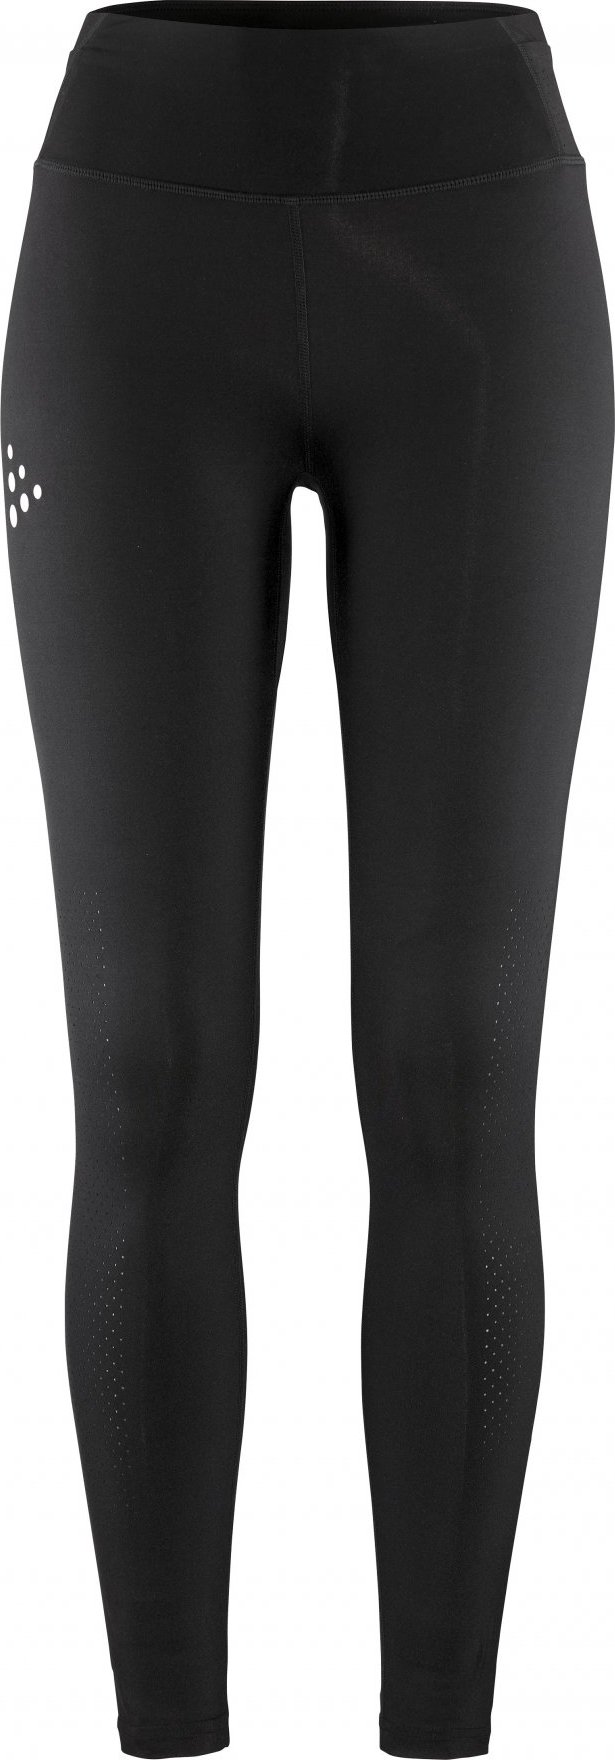 Dámské běžecké kalhoty CRAFT PRO Hypervent 2 - černá Velikost: M